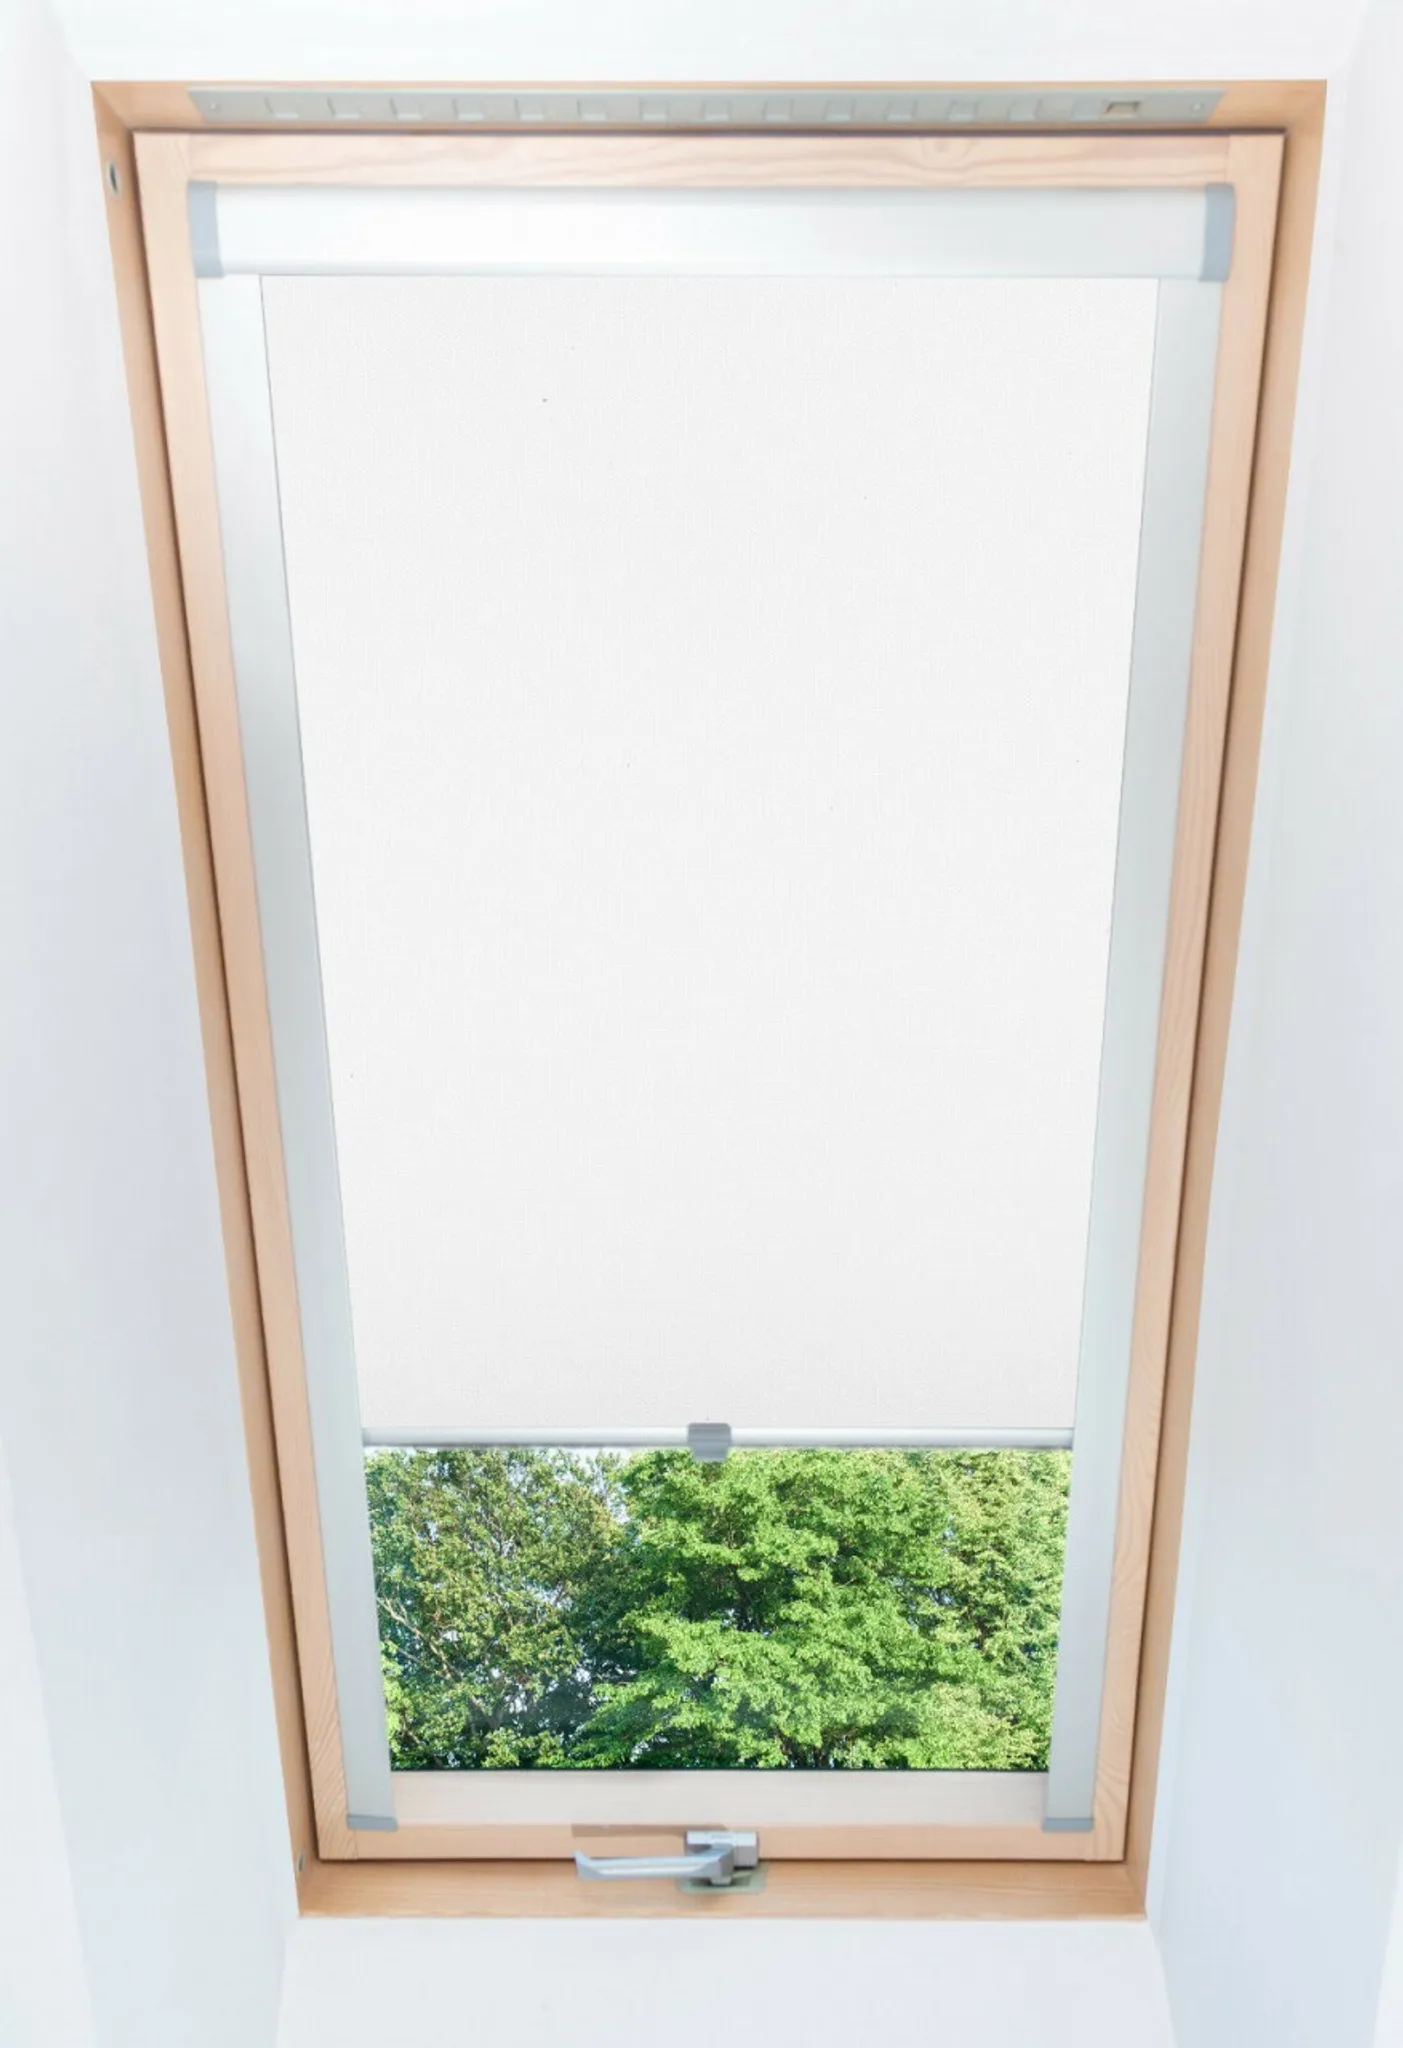 Gardinia Seitenzug-Rollo Verdunkelung 182 cm x 180 cm Weiß kaufen bei OBI